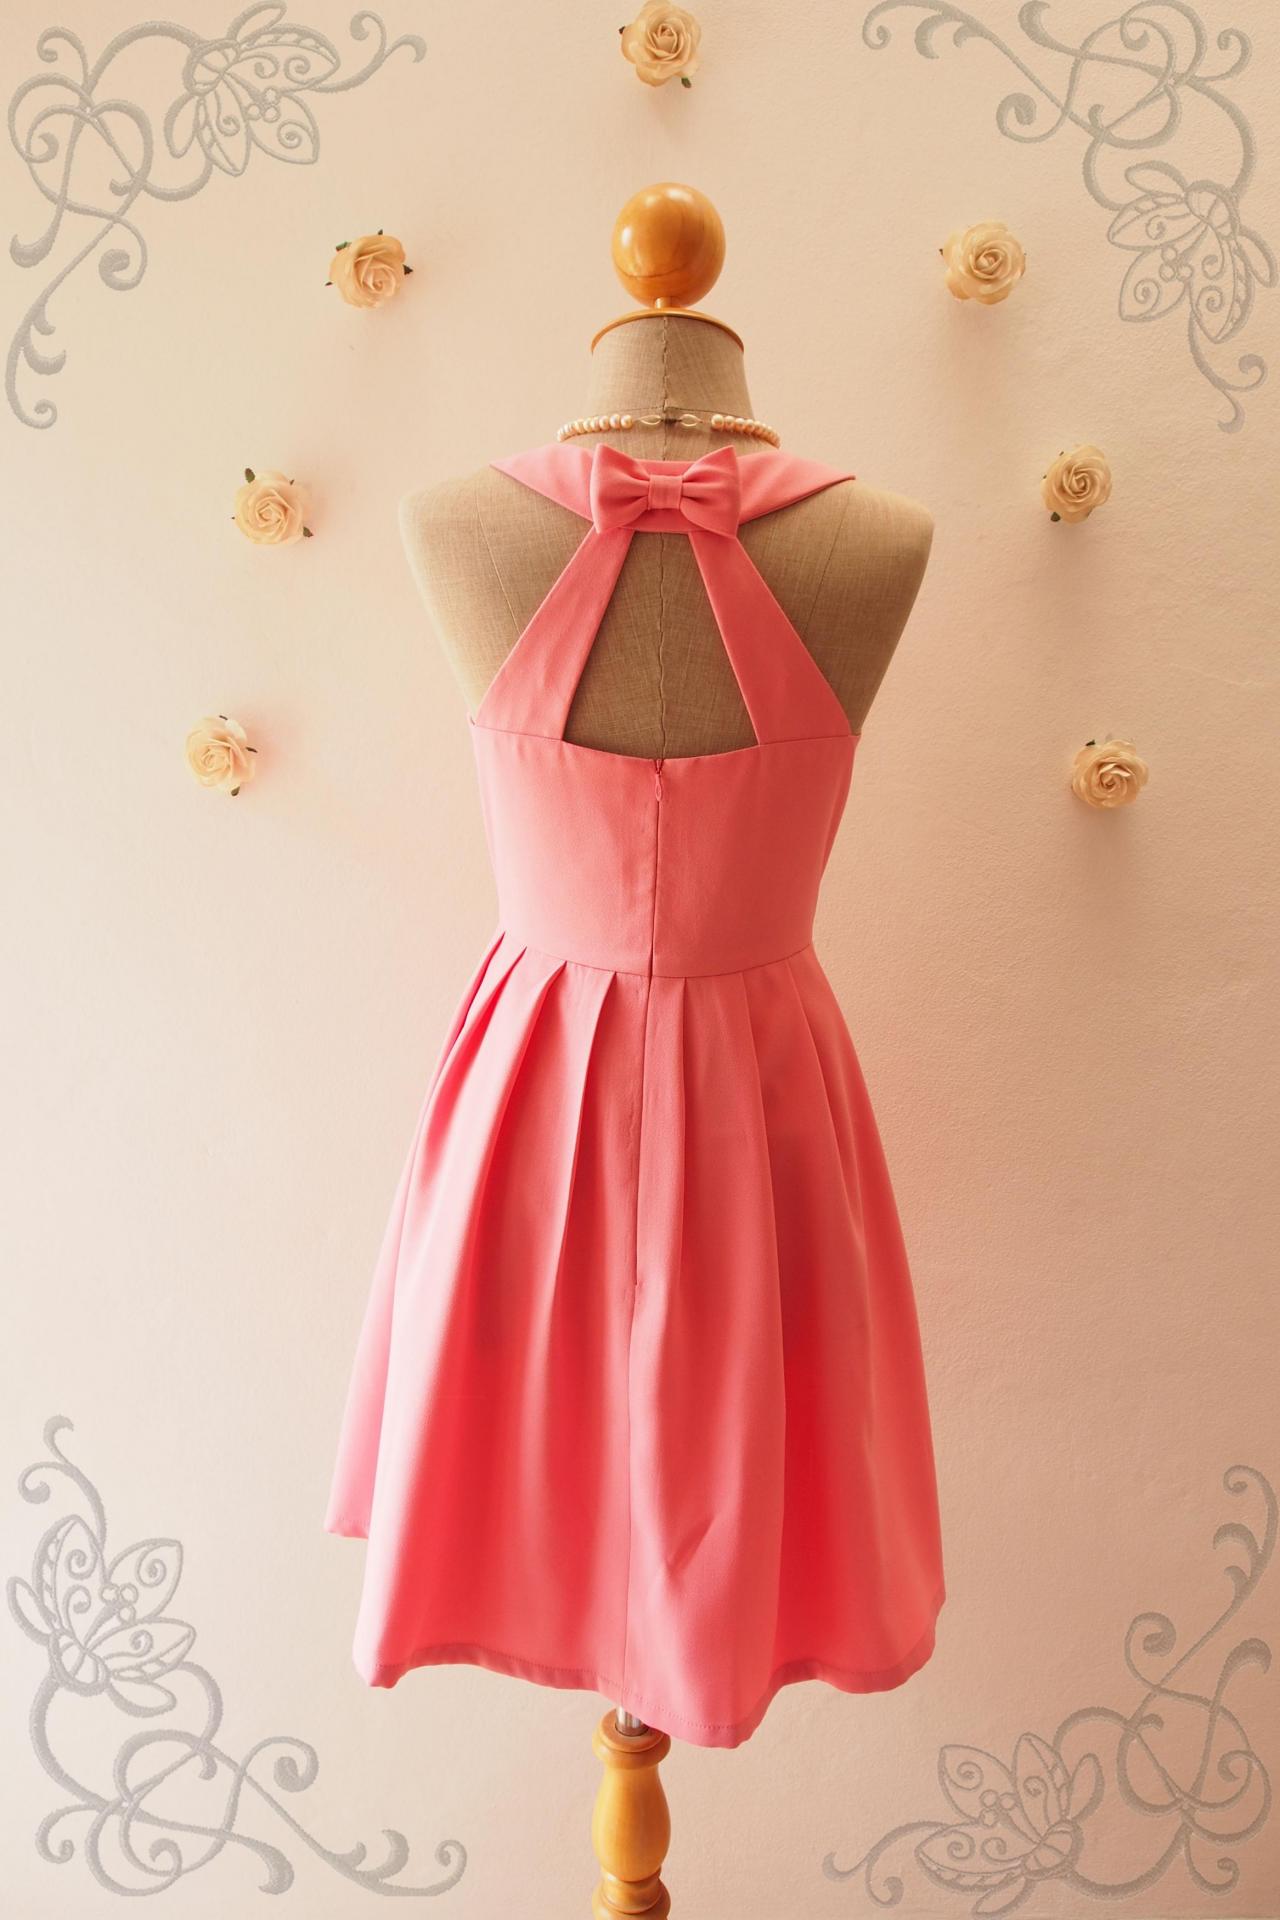 Love Potion - Rose Pink Dress,pink Bridesmaid Dress,pink Party Dress, Vintage Inspired, Audrey Hepburn Dress, Skater Dress, Mint Formal Dress,